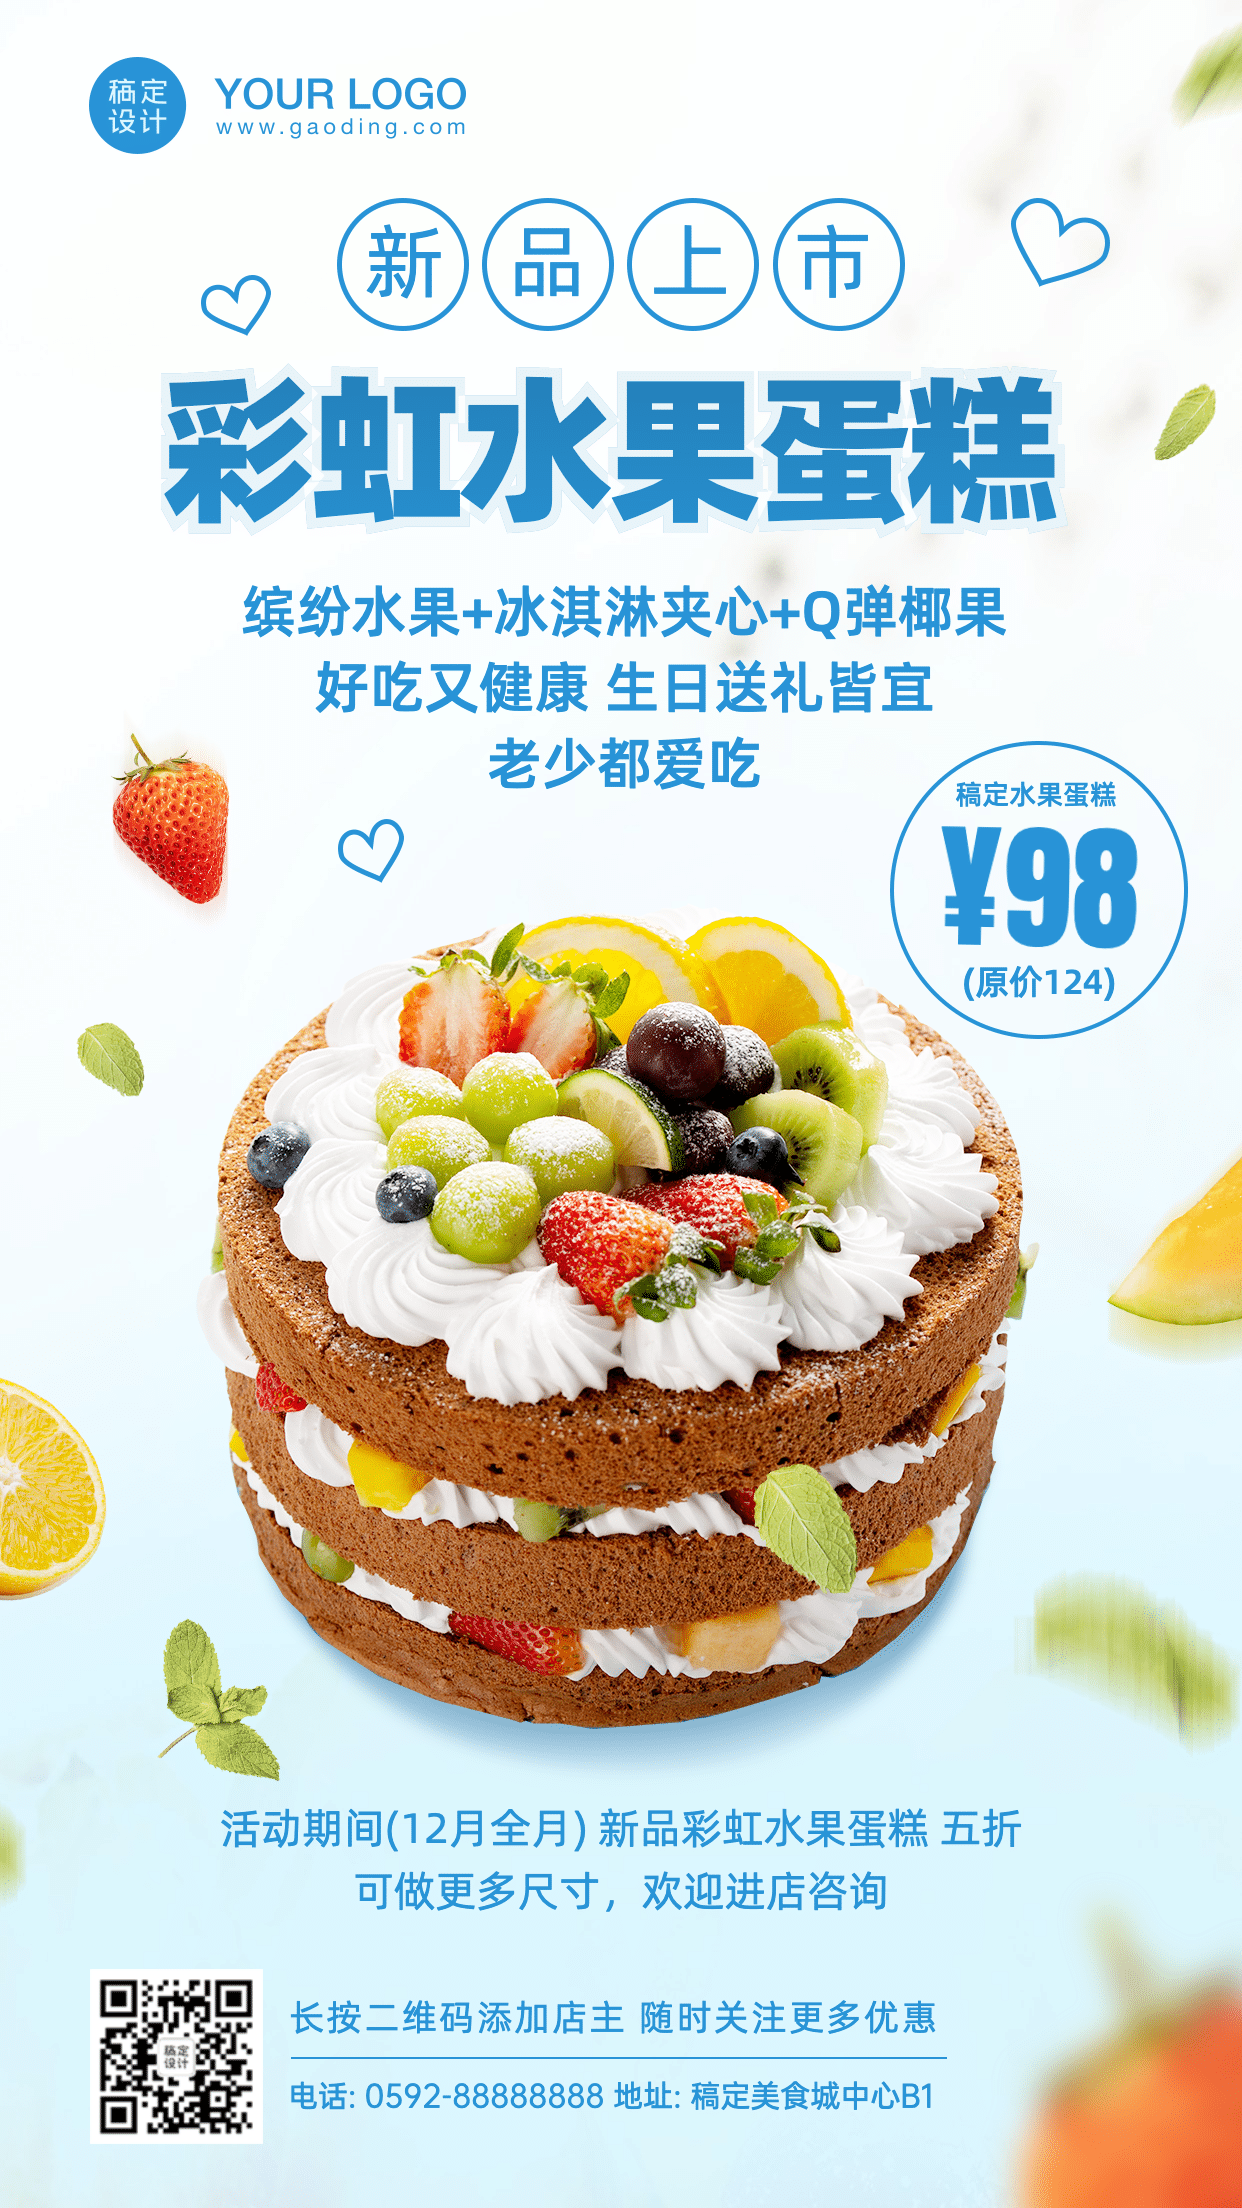 餐饮蛋糕烘焙店新品促销海报